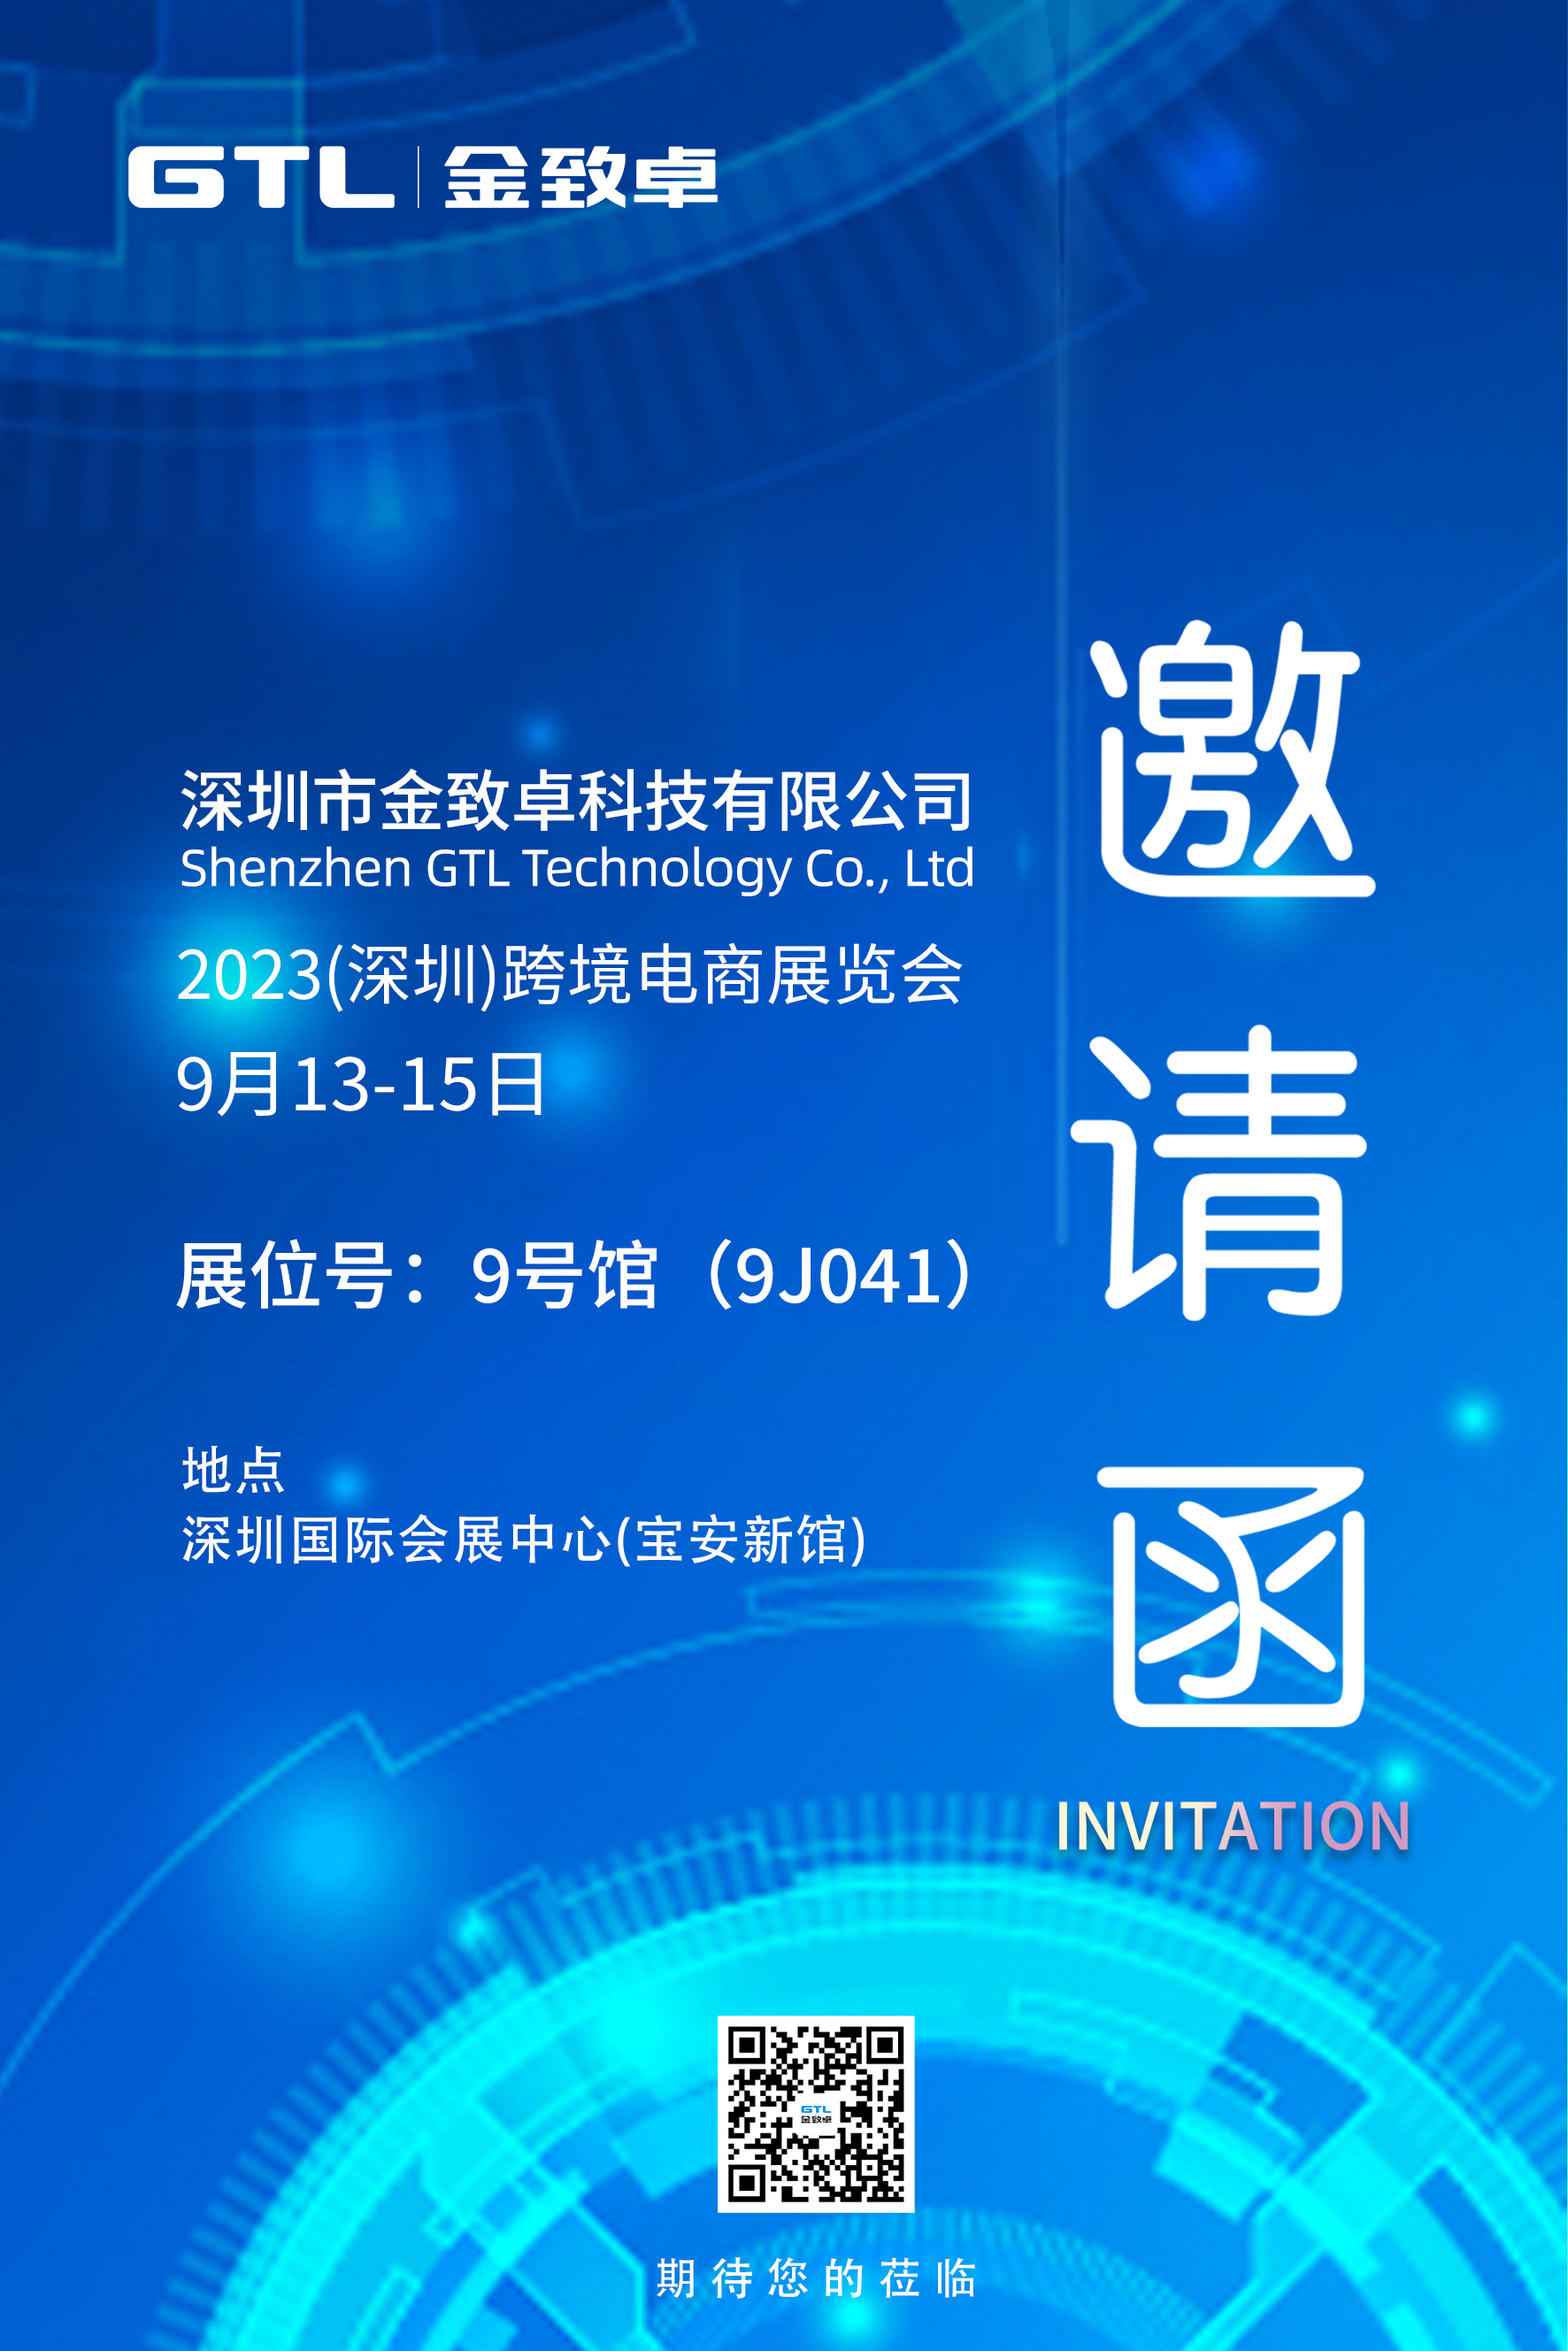 2023 China (Shenzhen) Cross-Border E-commerce Exhibition (Autumn)